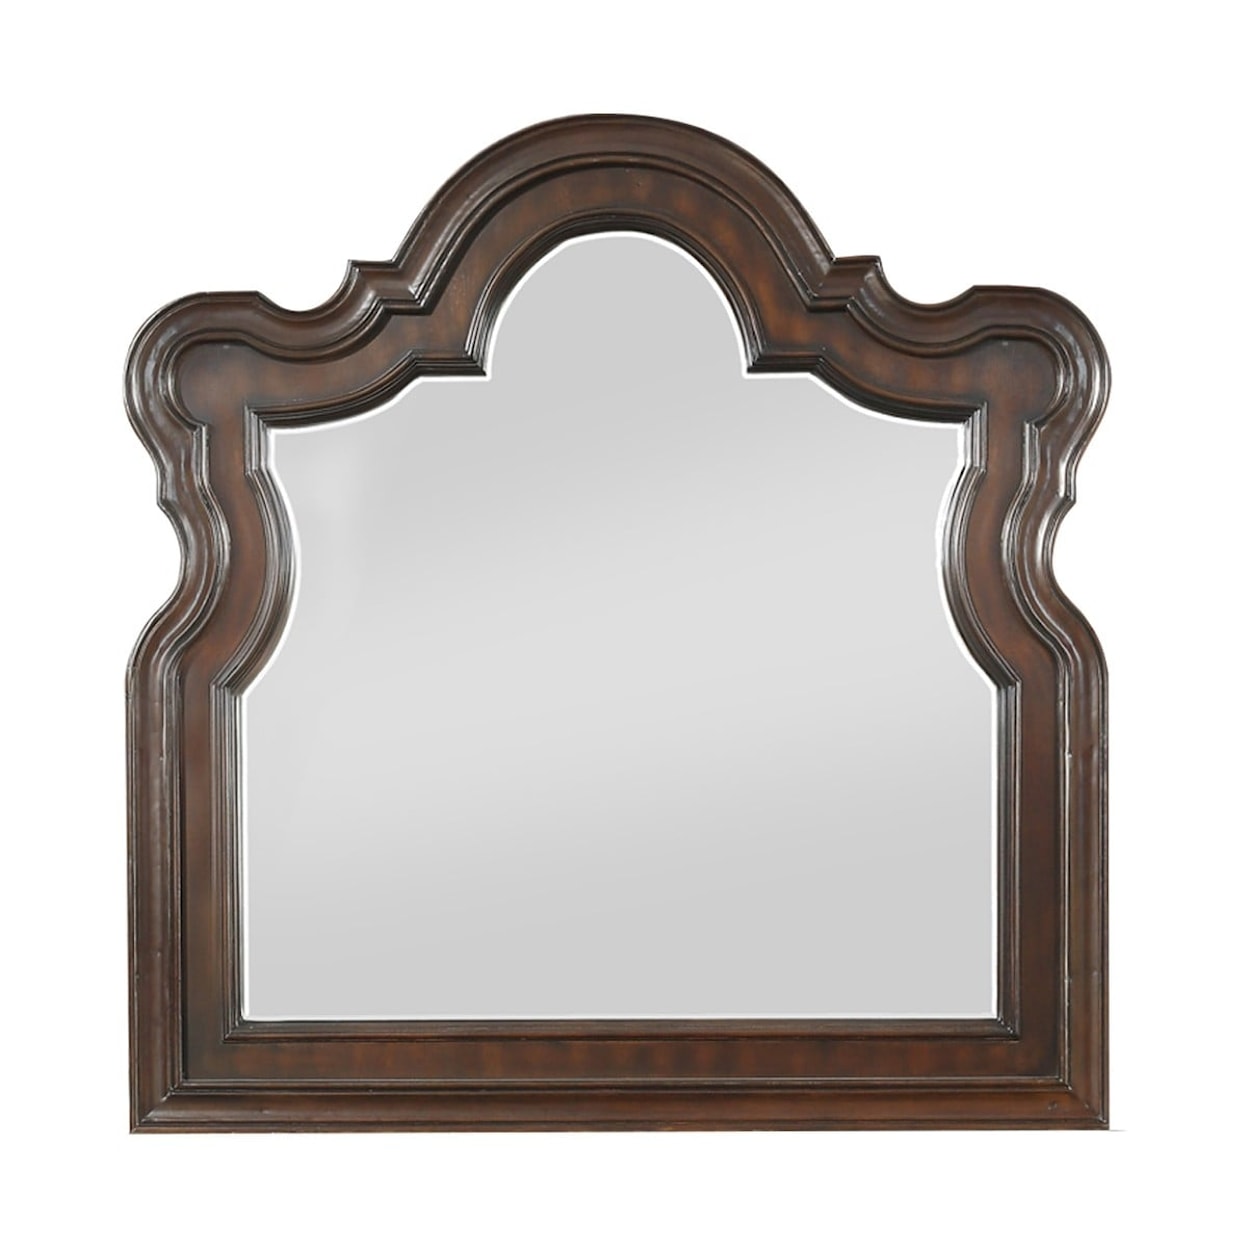 Homelegance Highlands Royal Arched Mirror